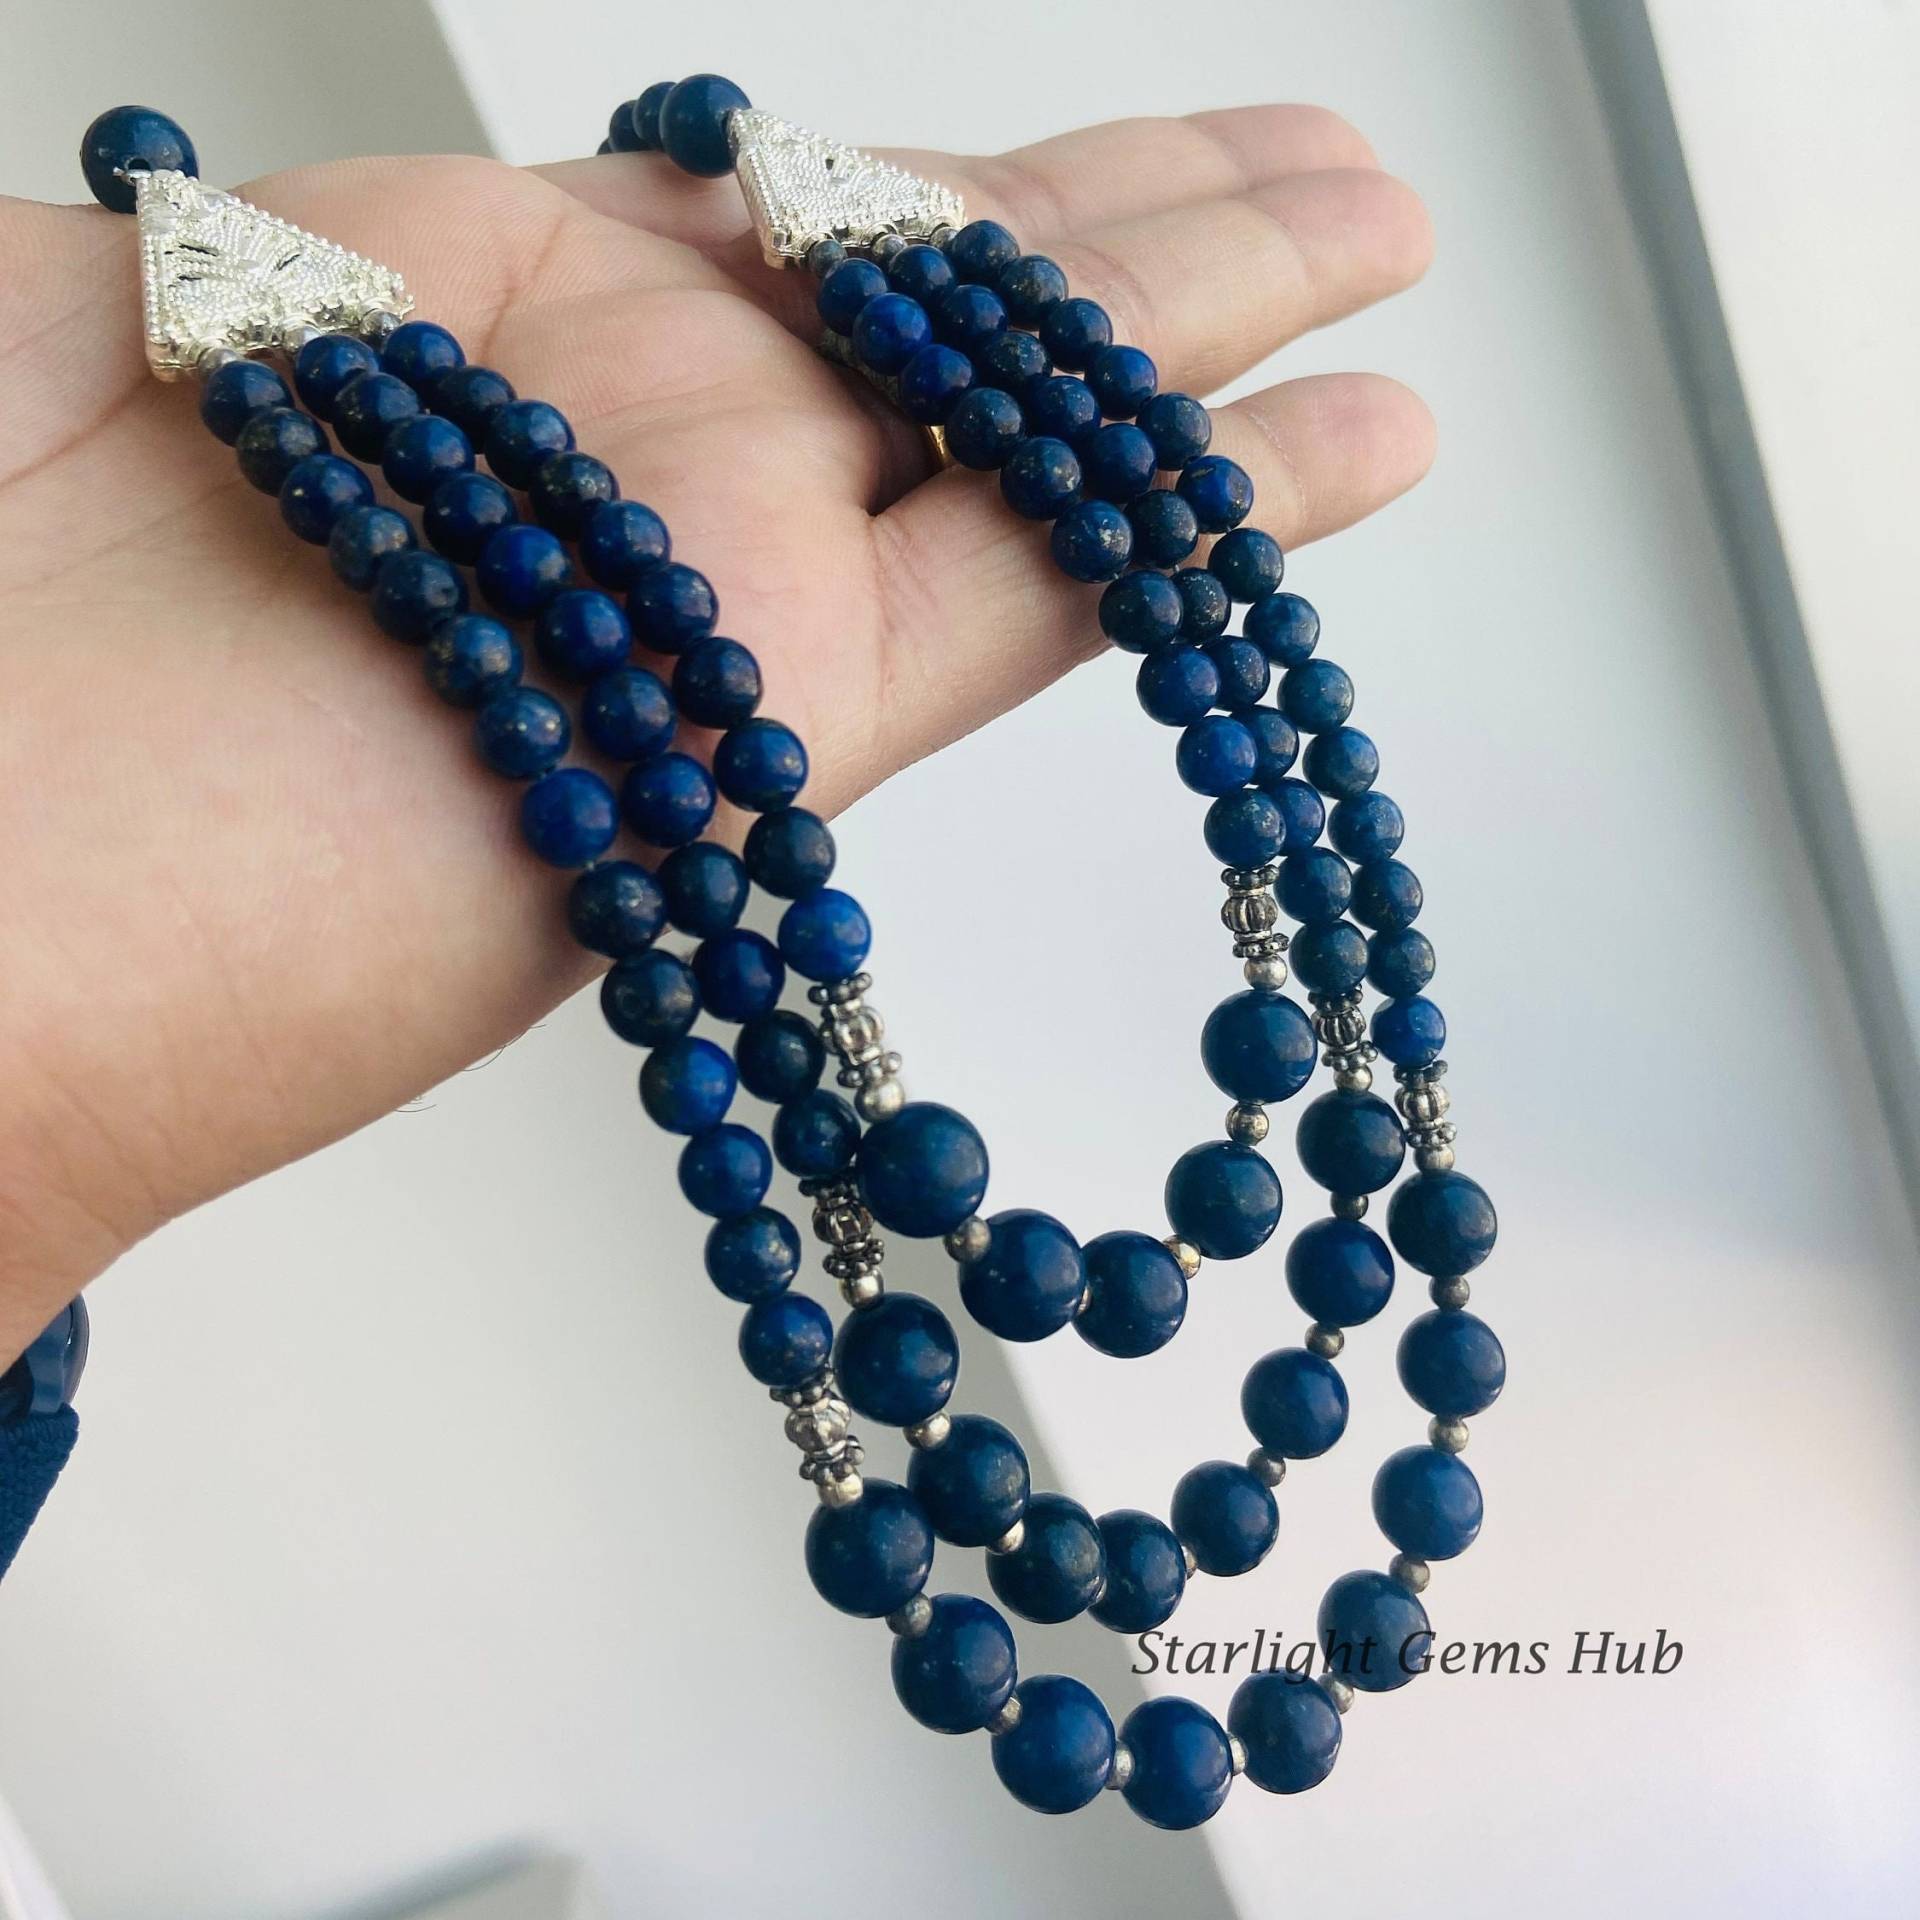 Echte Blaue Lapislazuli Perlenkette-Glatte Runde Blaue Edelstein Schmuck-Layering Halskette-Frauen Schmuck-925 Lock-Beste Geschenke Für Sie von StarLightGemsHub